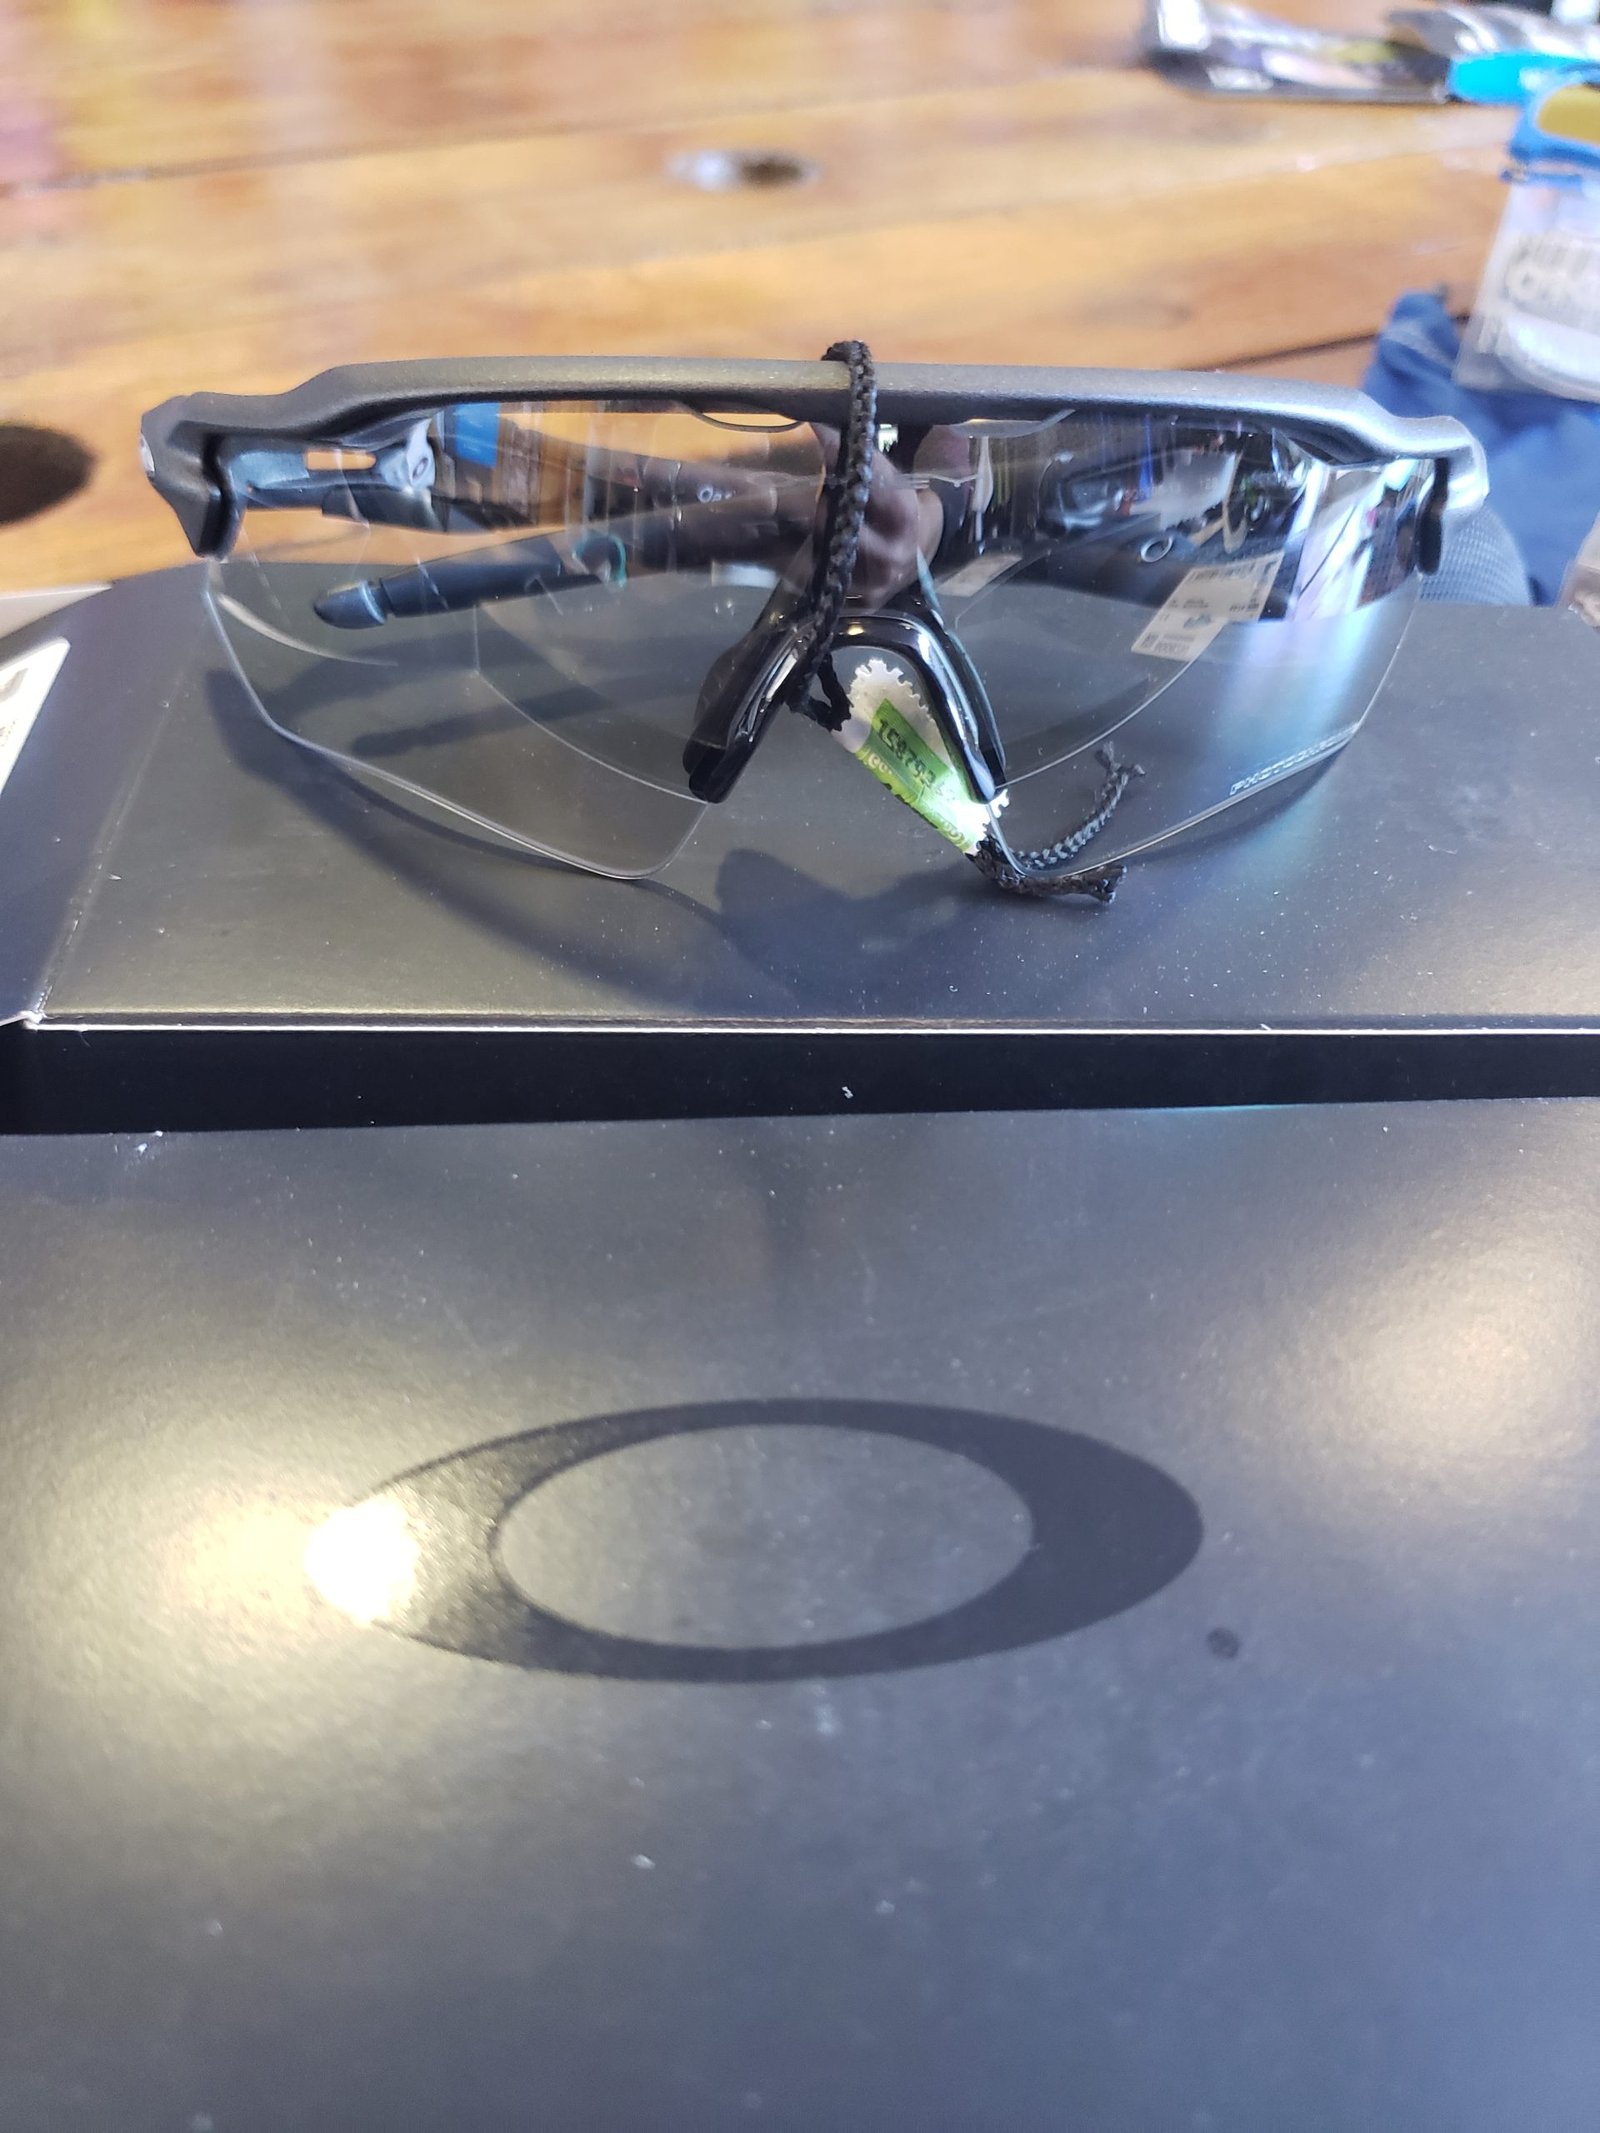 Gafas Oakley fotocromáticas